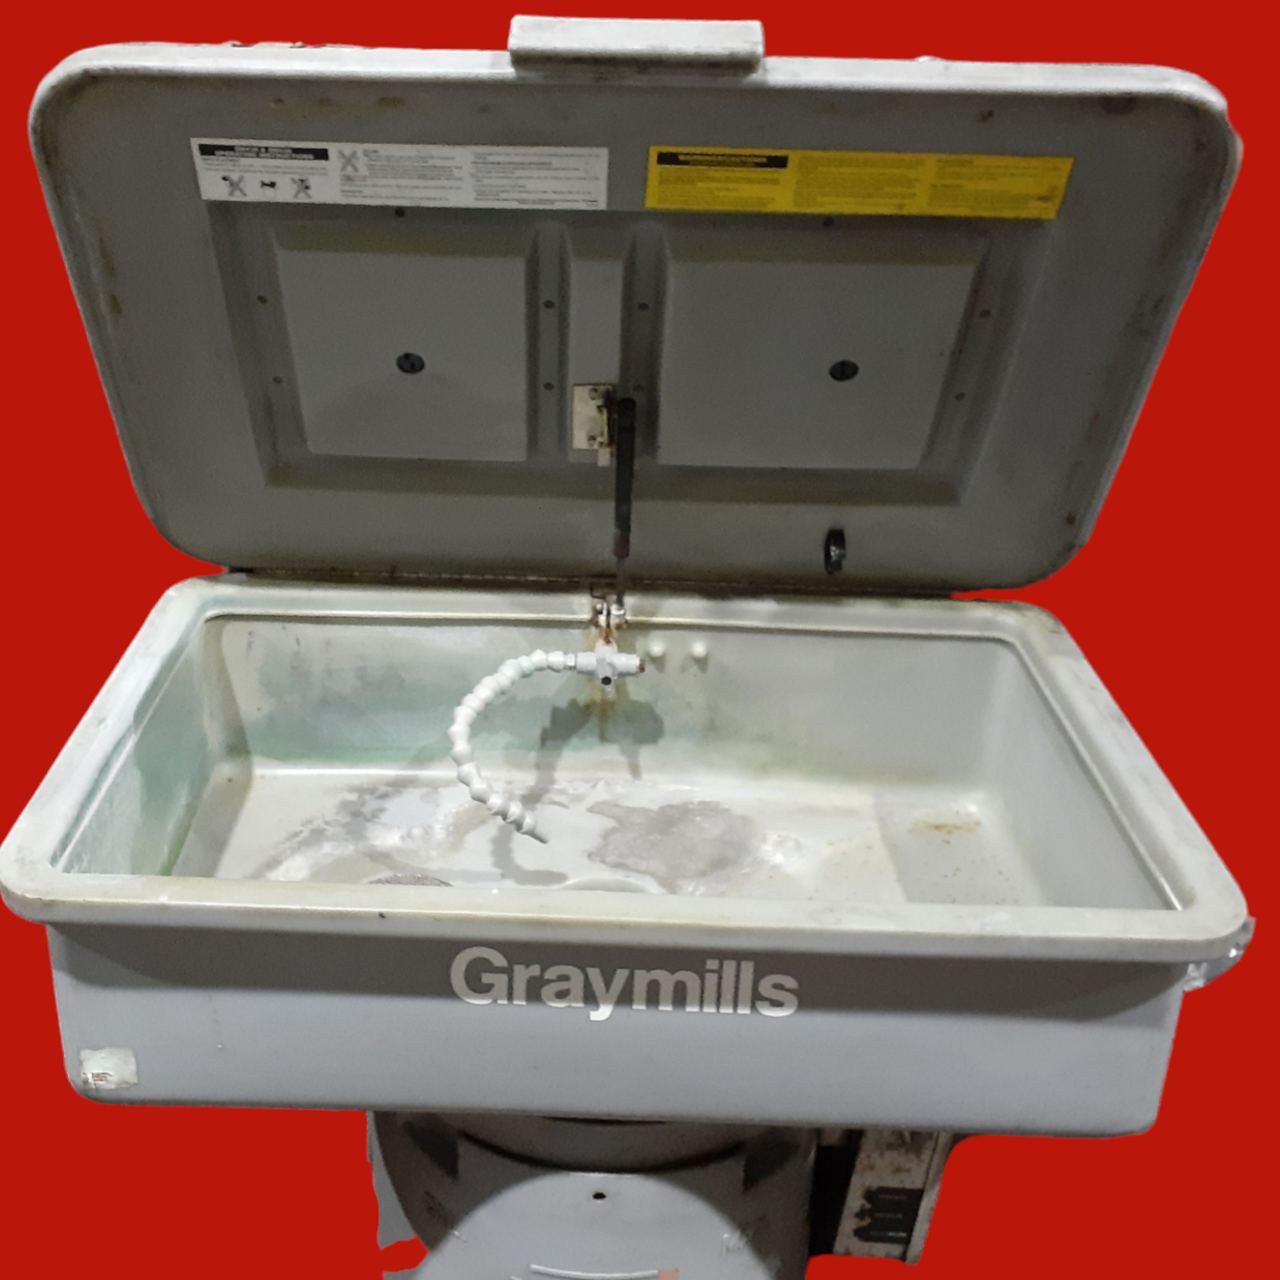 Graymills Jobsite Parts Washer DH436 